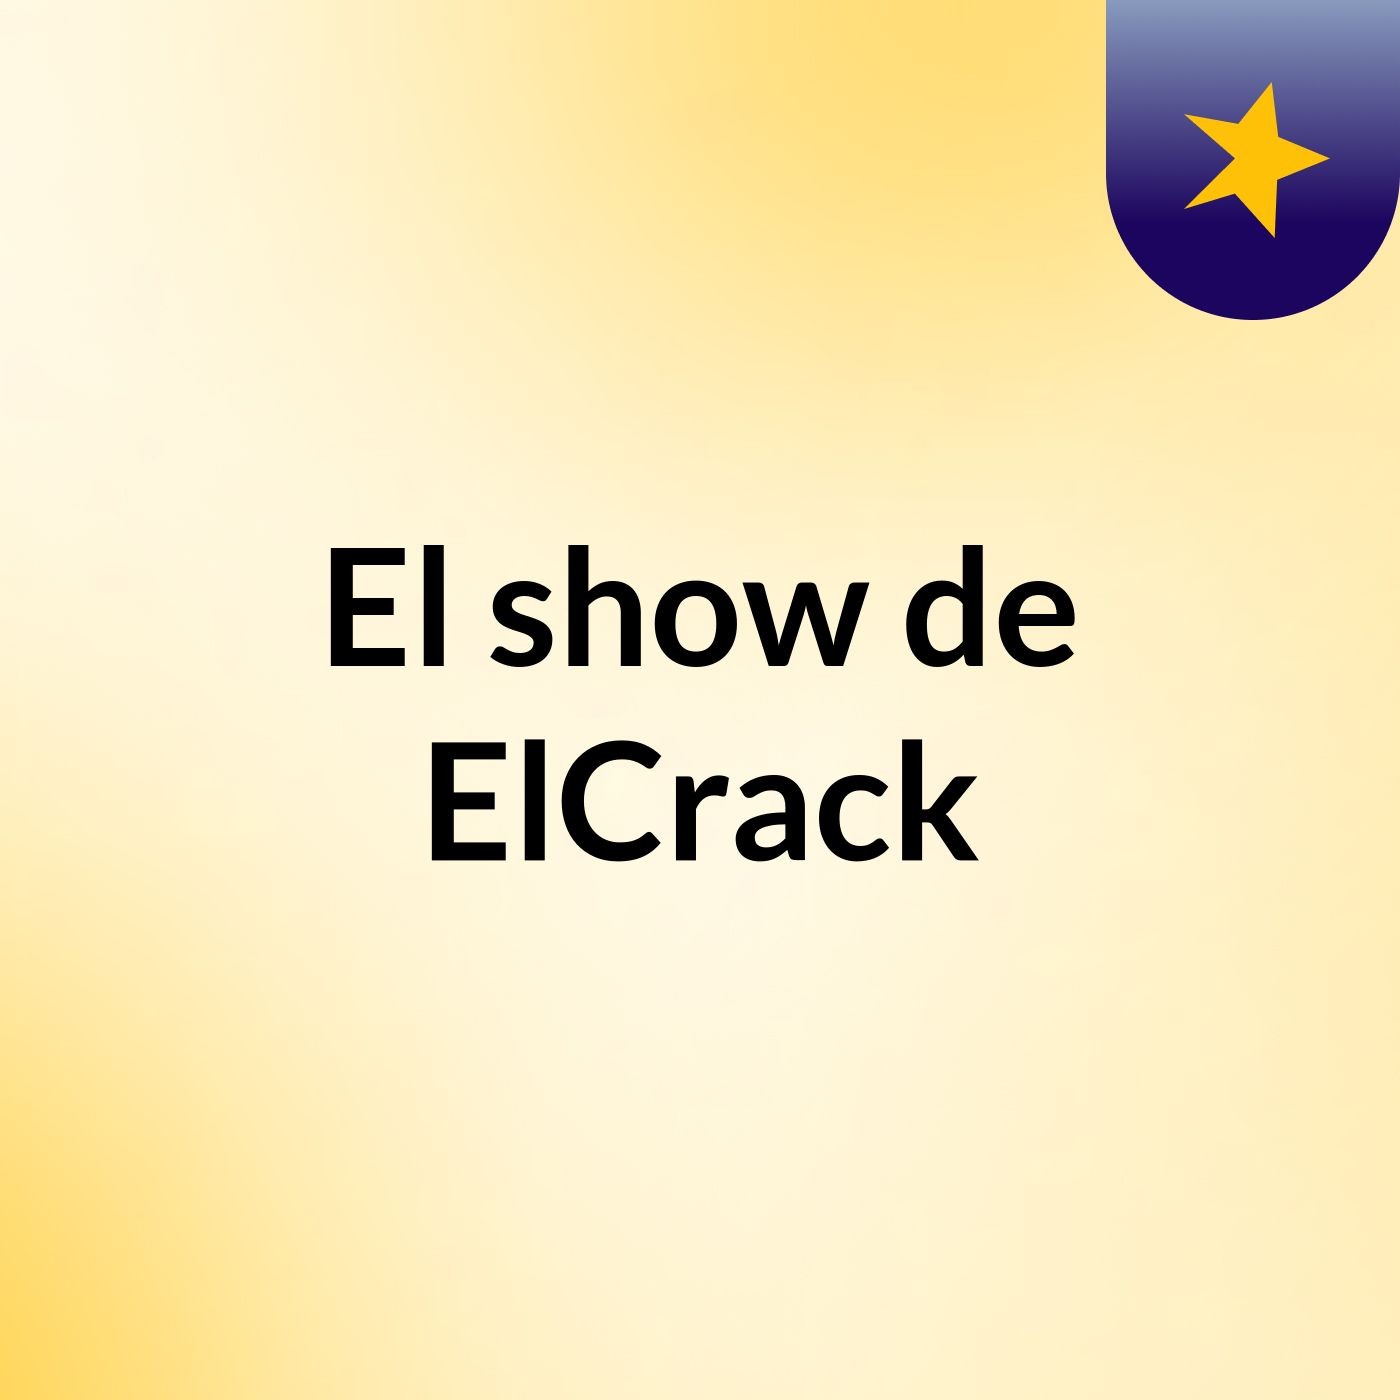 El show de ElCrack